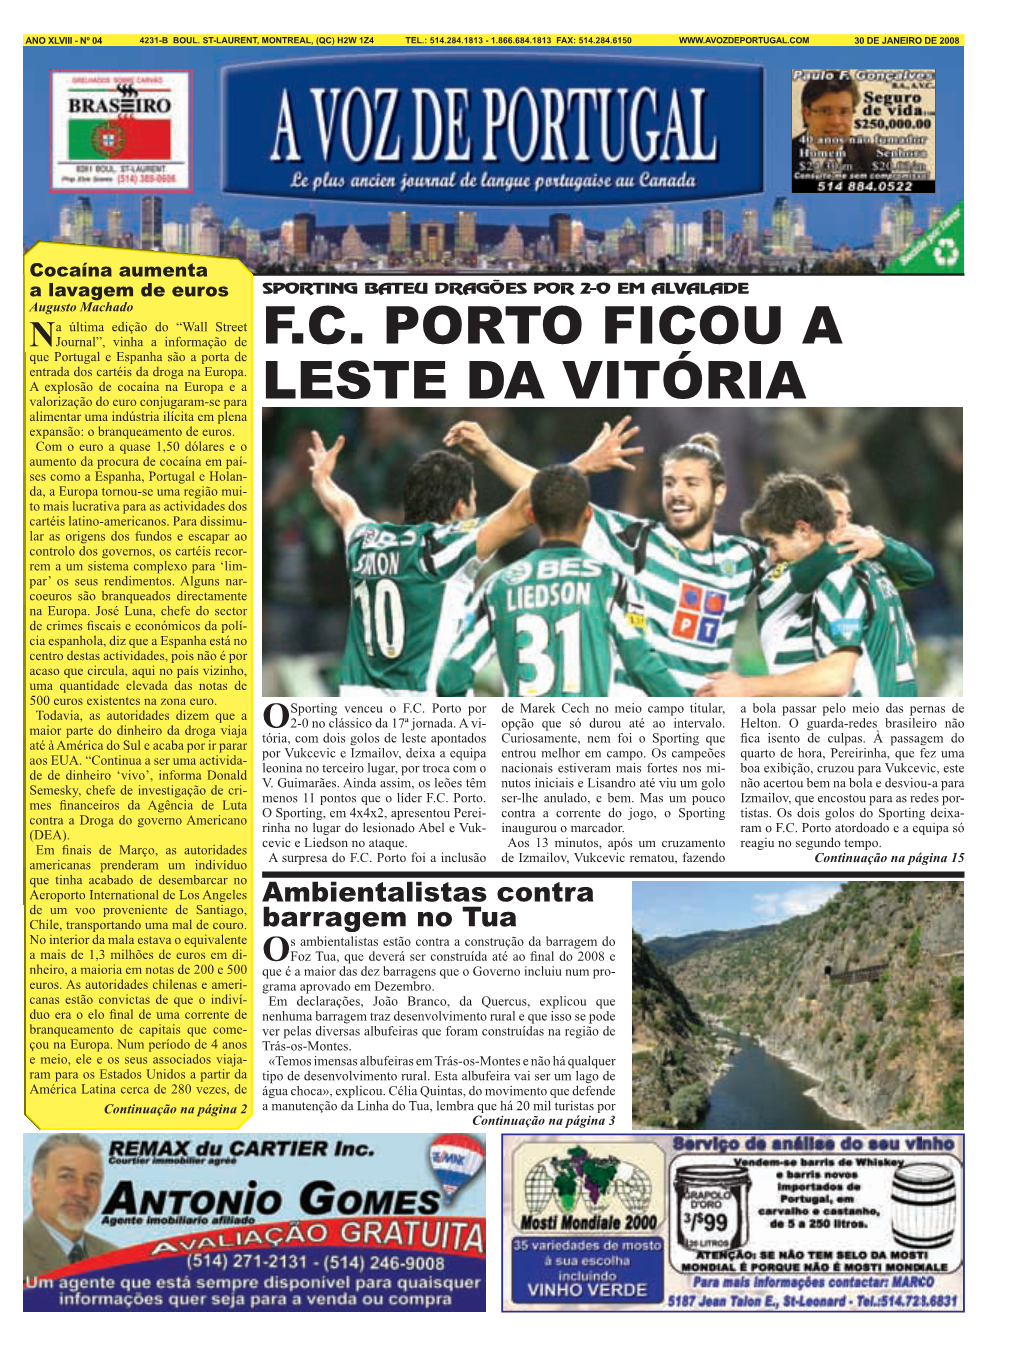 F.C. Porto Ficou a Leste Da Vitória